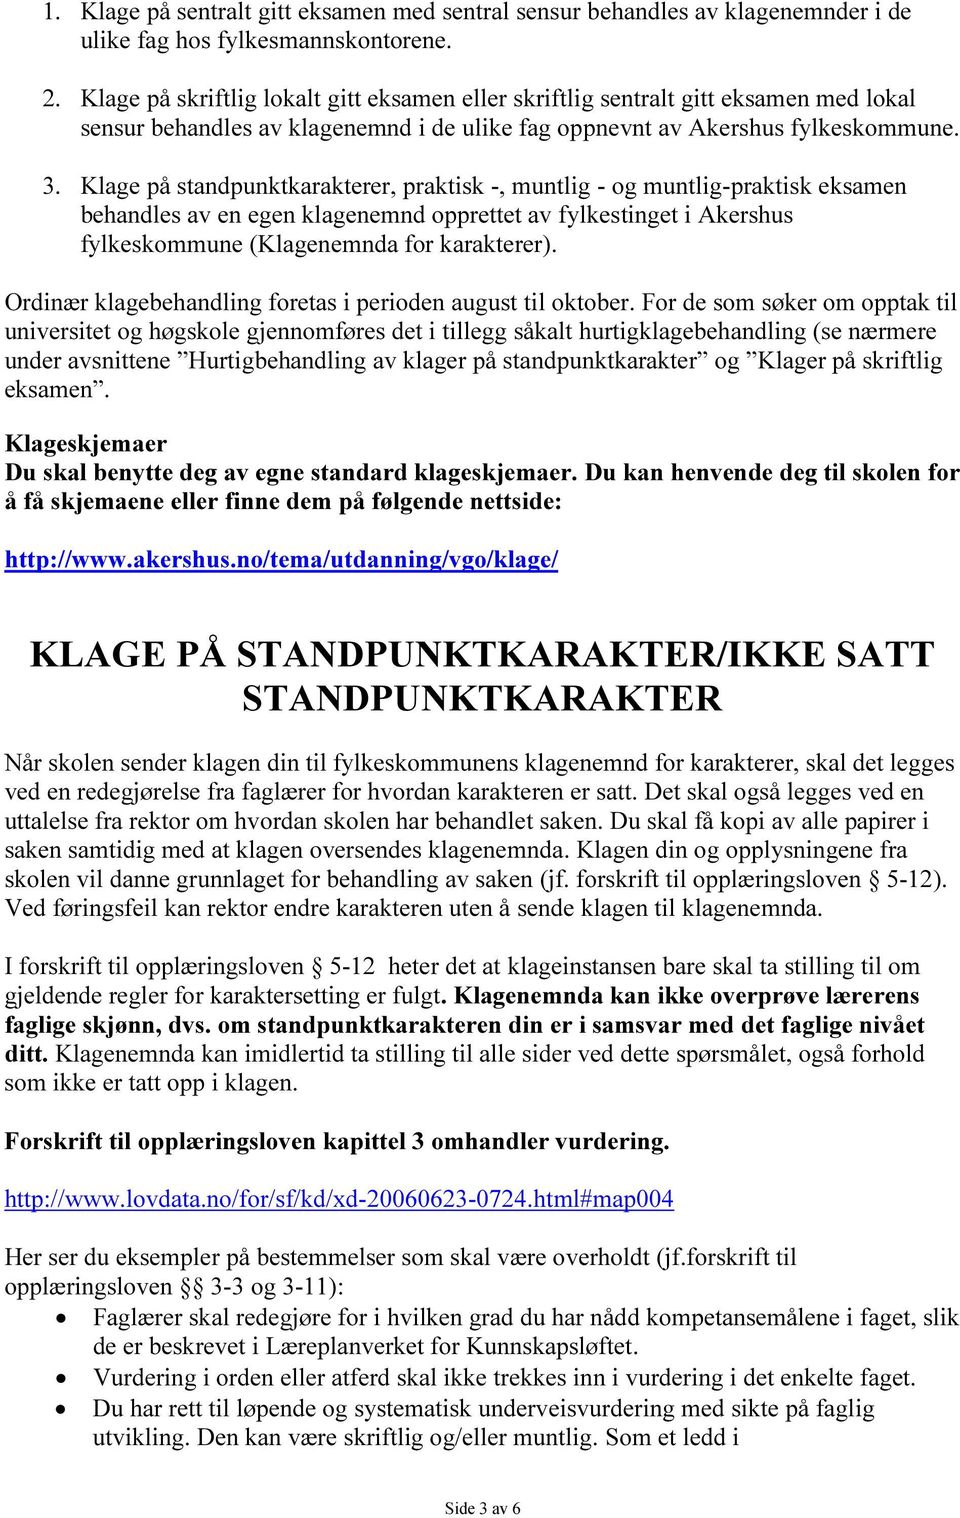 Klage på standpunktkarakterer, praktisk -, muntlig - og muntlig-praktisk eksamen behandles av en egen klagenemnd opprettet av fylkestinget i Akershus fylkeskommune (Klagenemnda for karakterer).